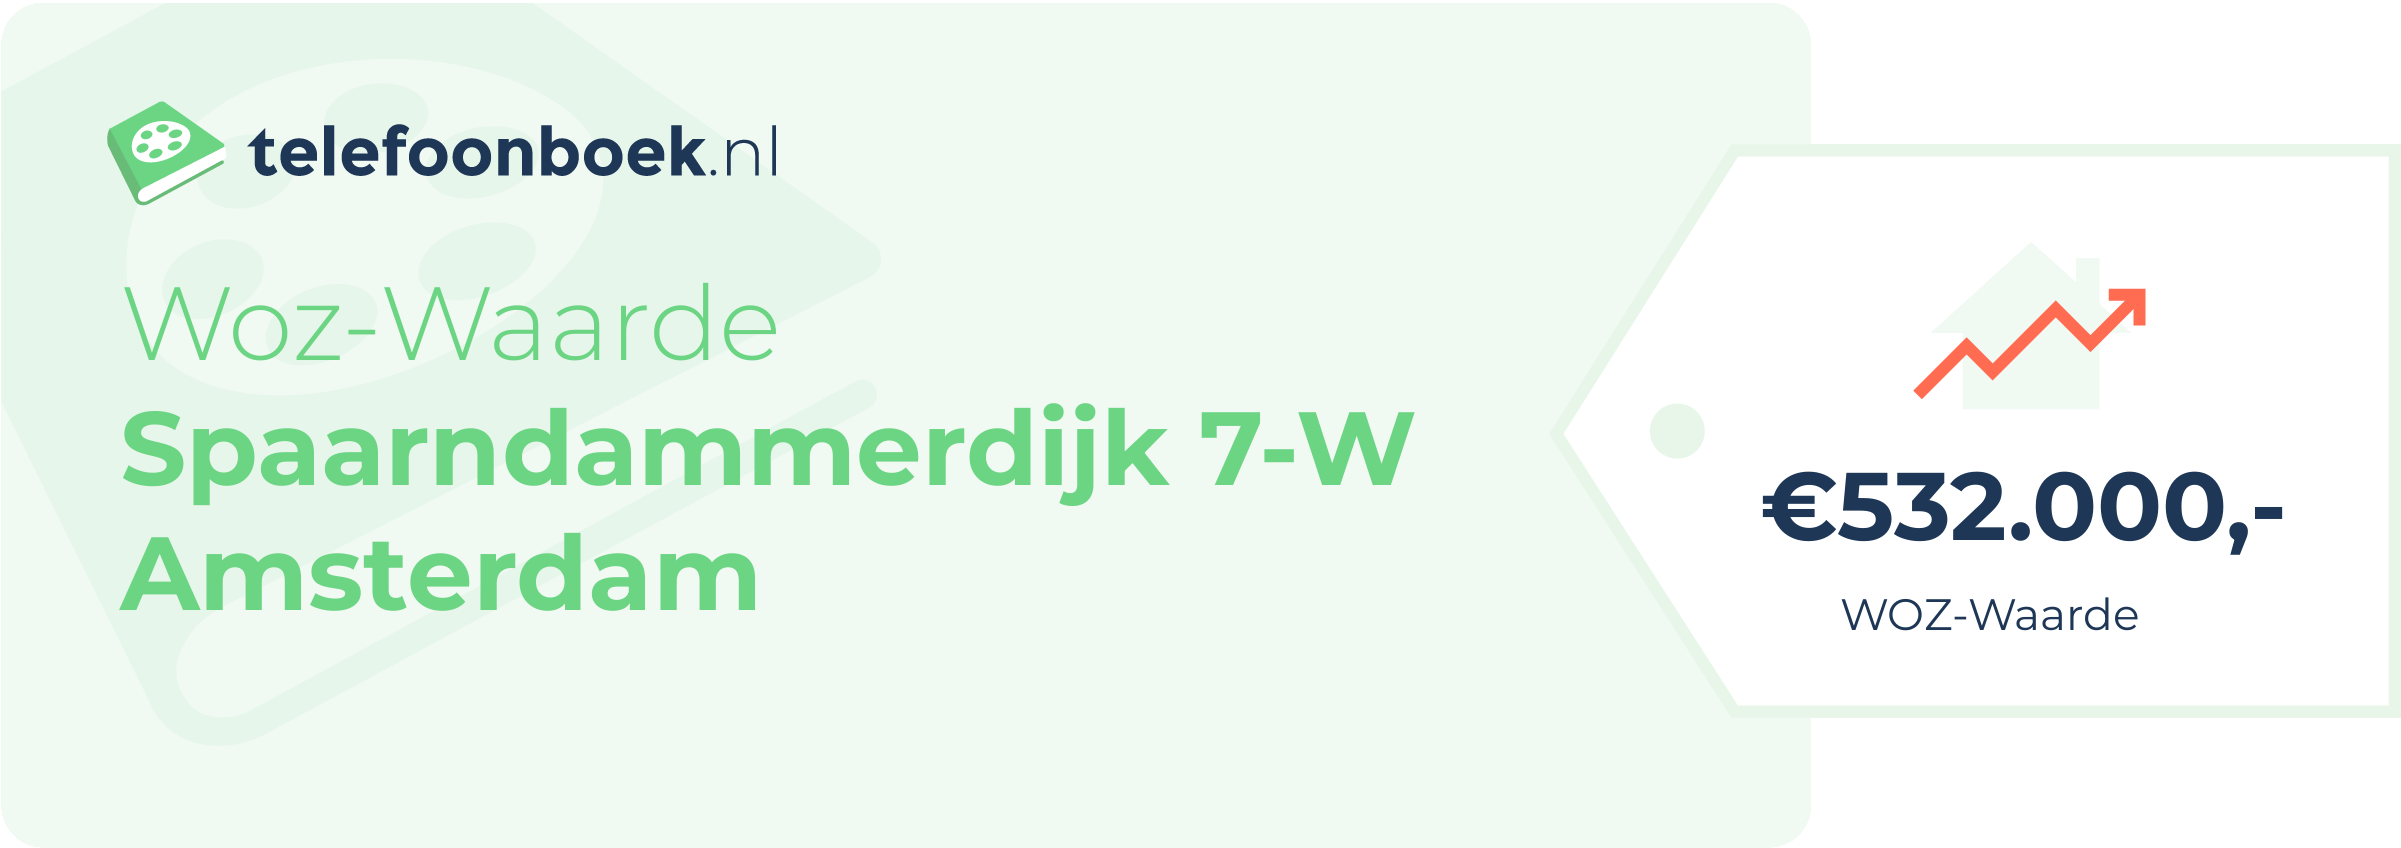 WOZ-waarde Spaarndammerdijk 7-W Amsterdam